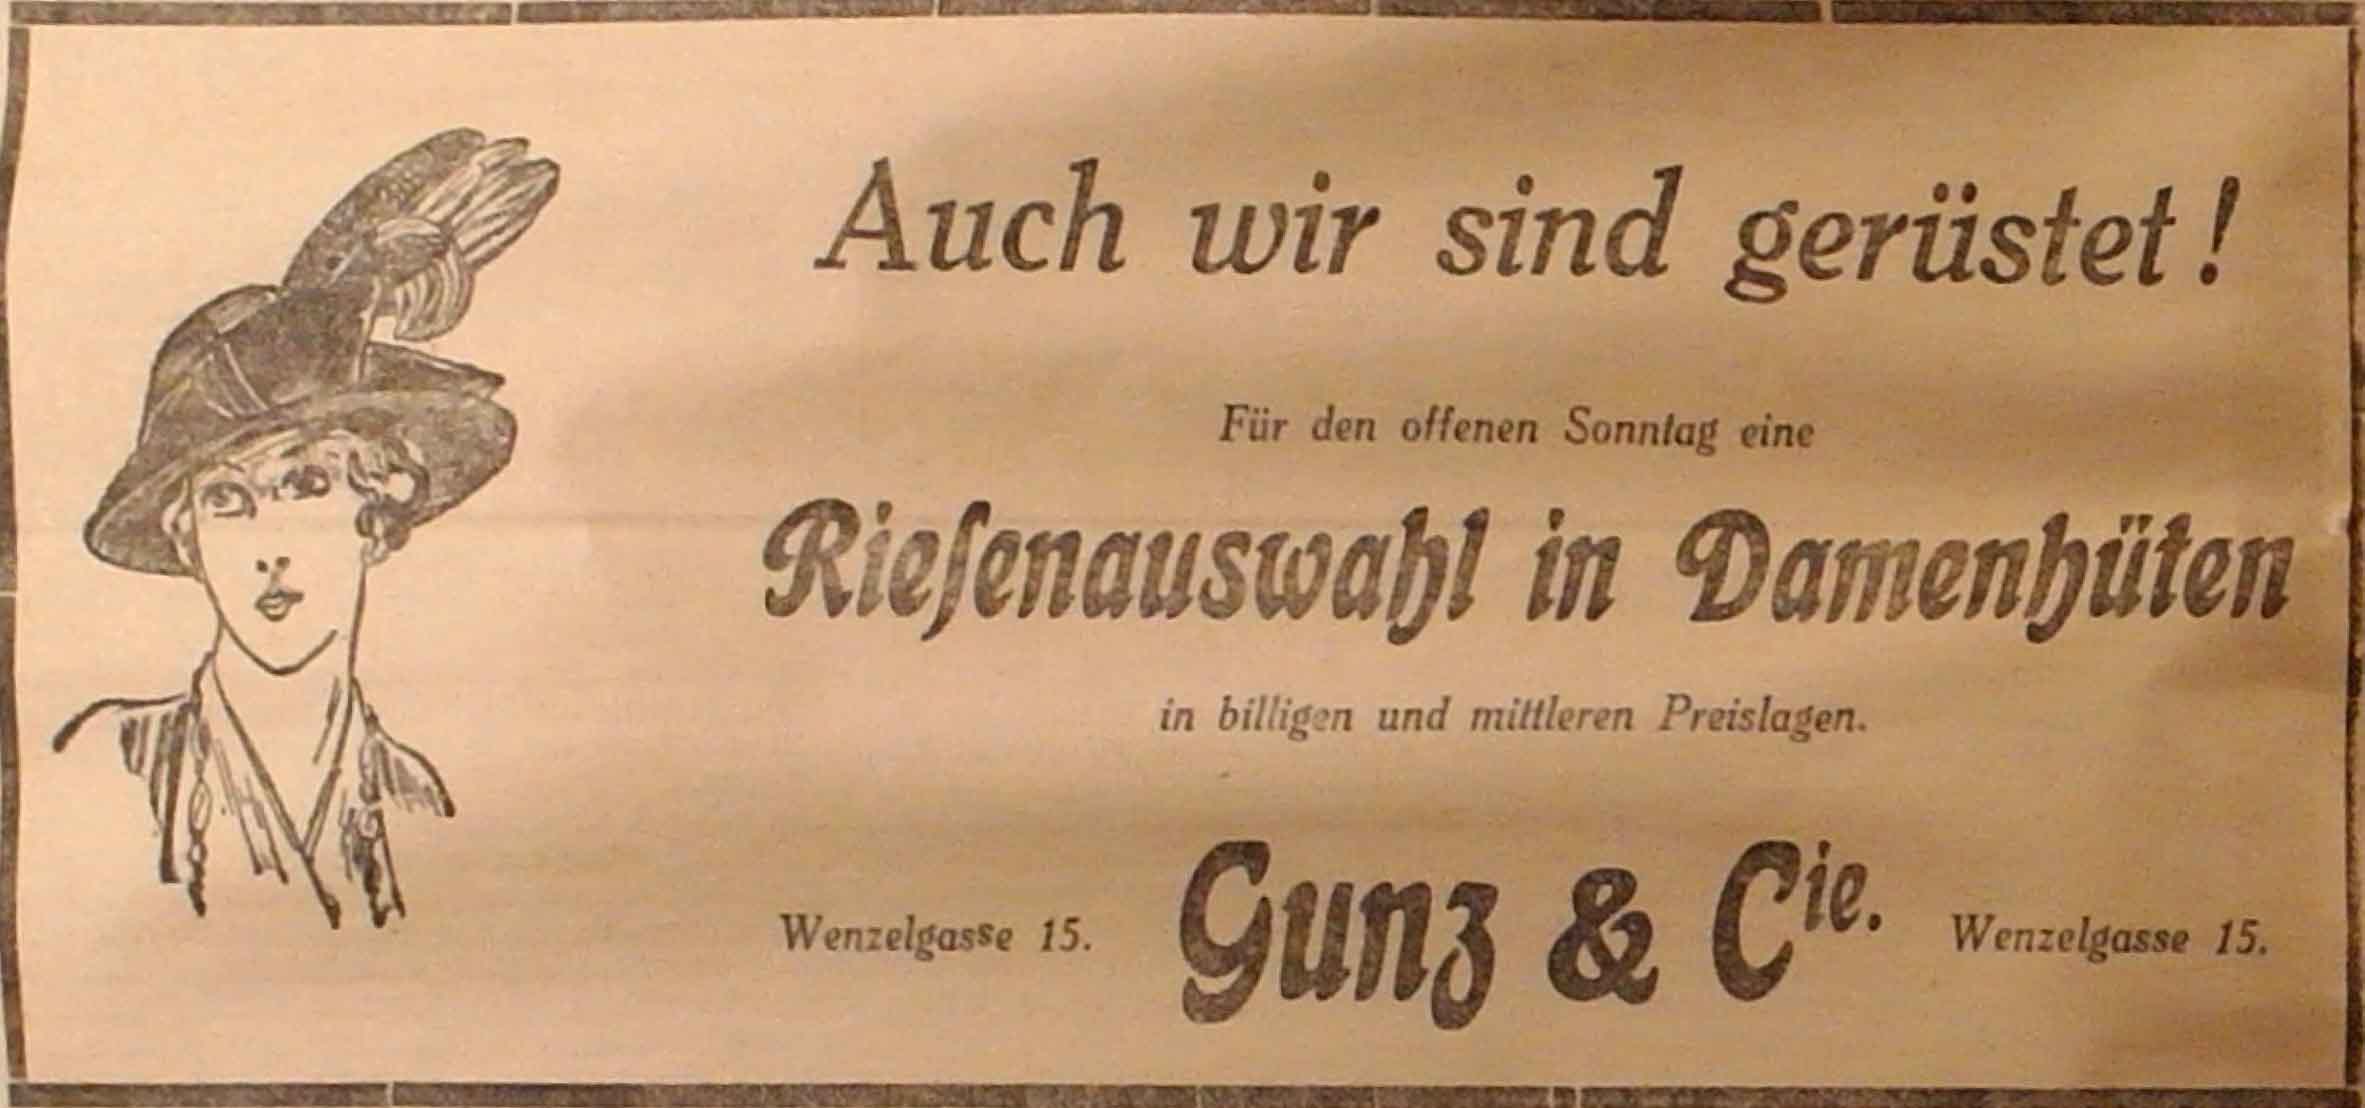 Anzeige in der Deutschen Reichs-Zeitung vom 24. Oktober 1914